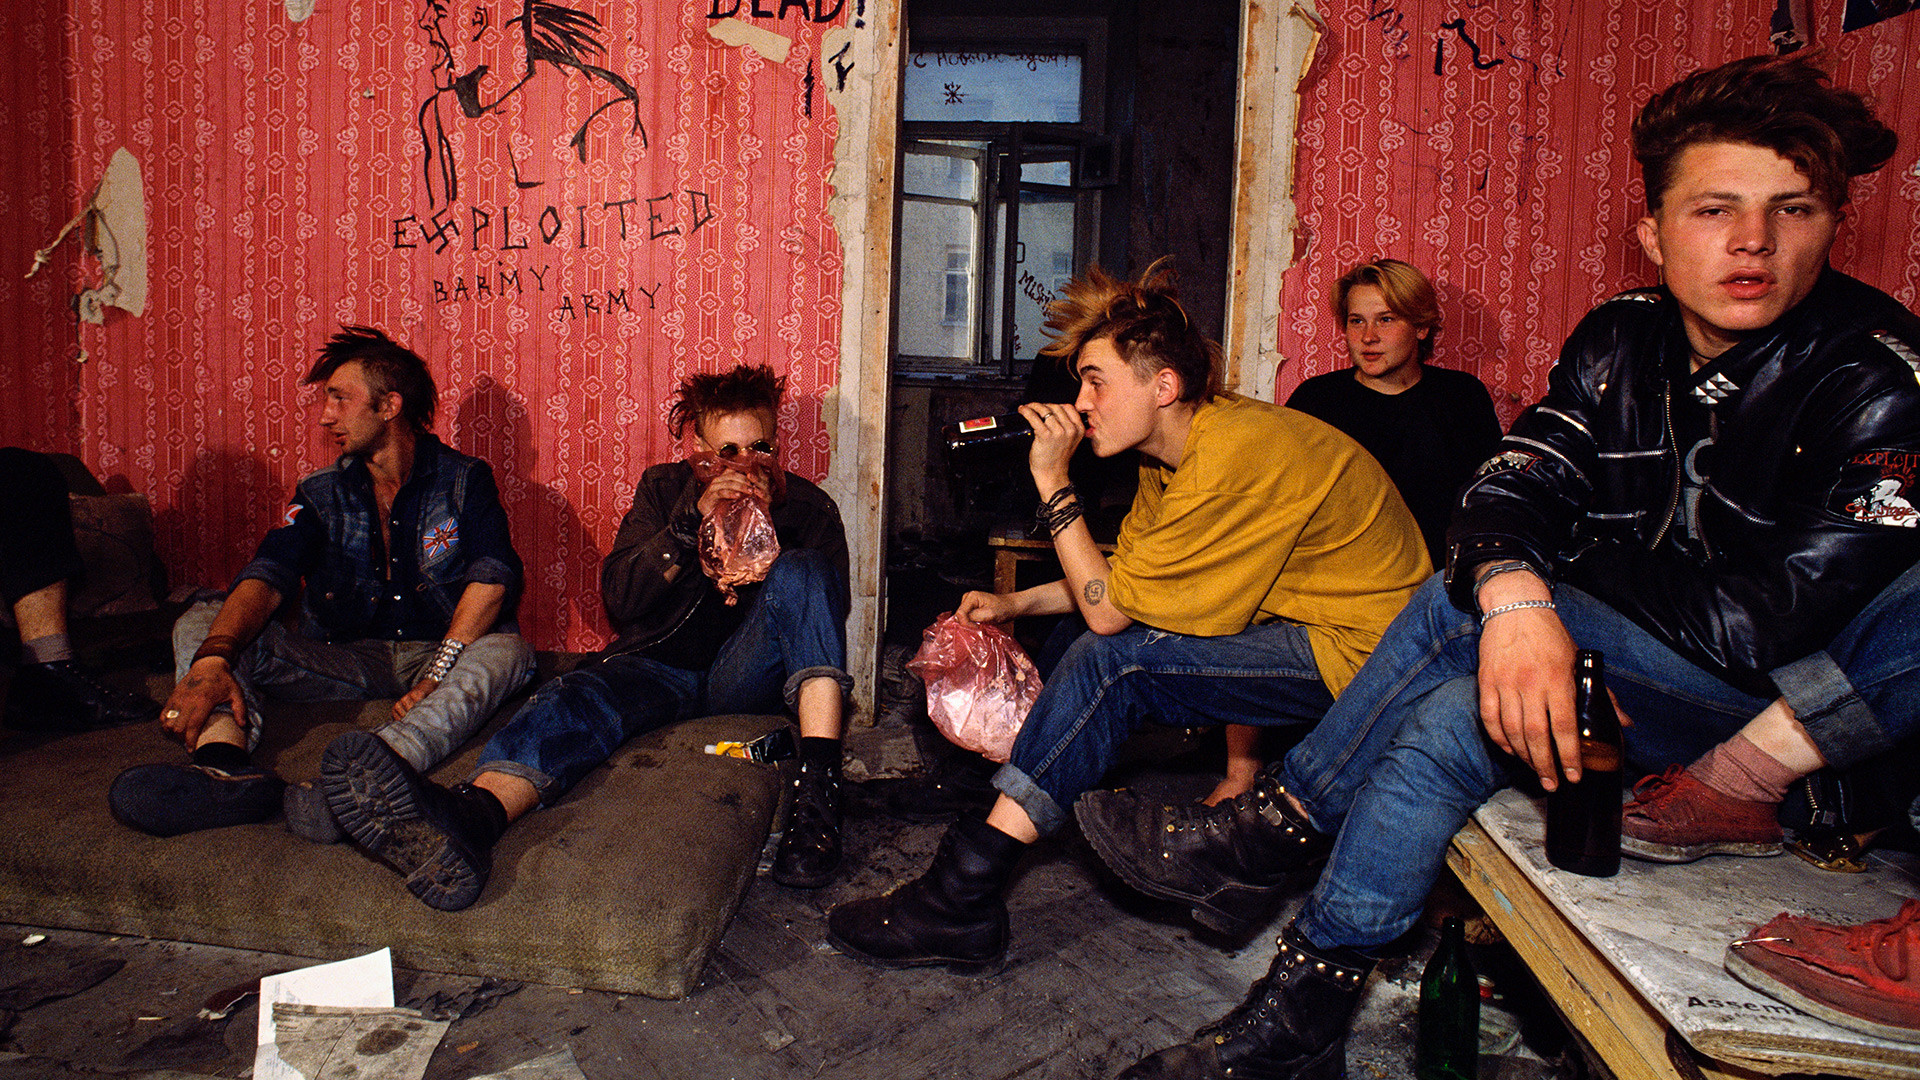 Des punks russes vivant dans un bâtiment abandonné près de la place Pouchkine, où ils survivent grâce aux poubelles de Pizza Hut et de McDonald's, ainsi qu'en mendiant.